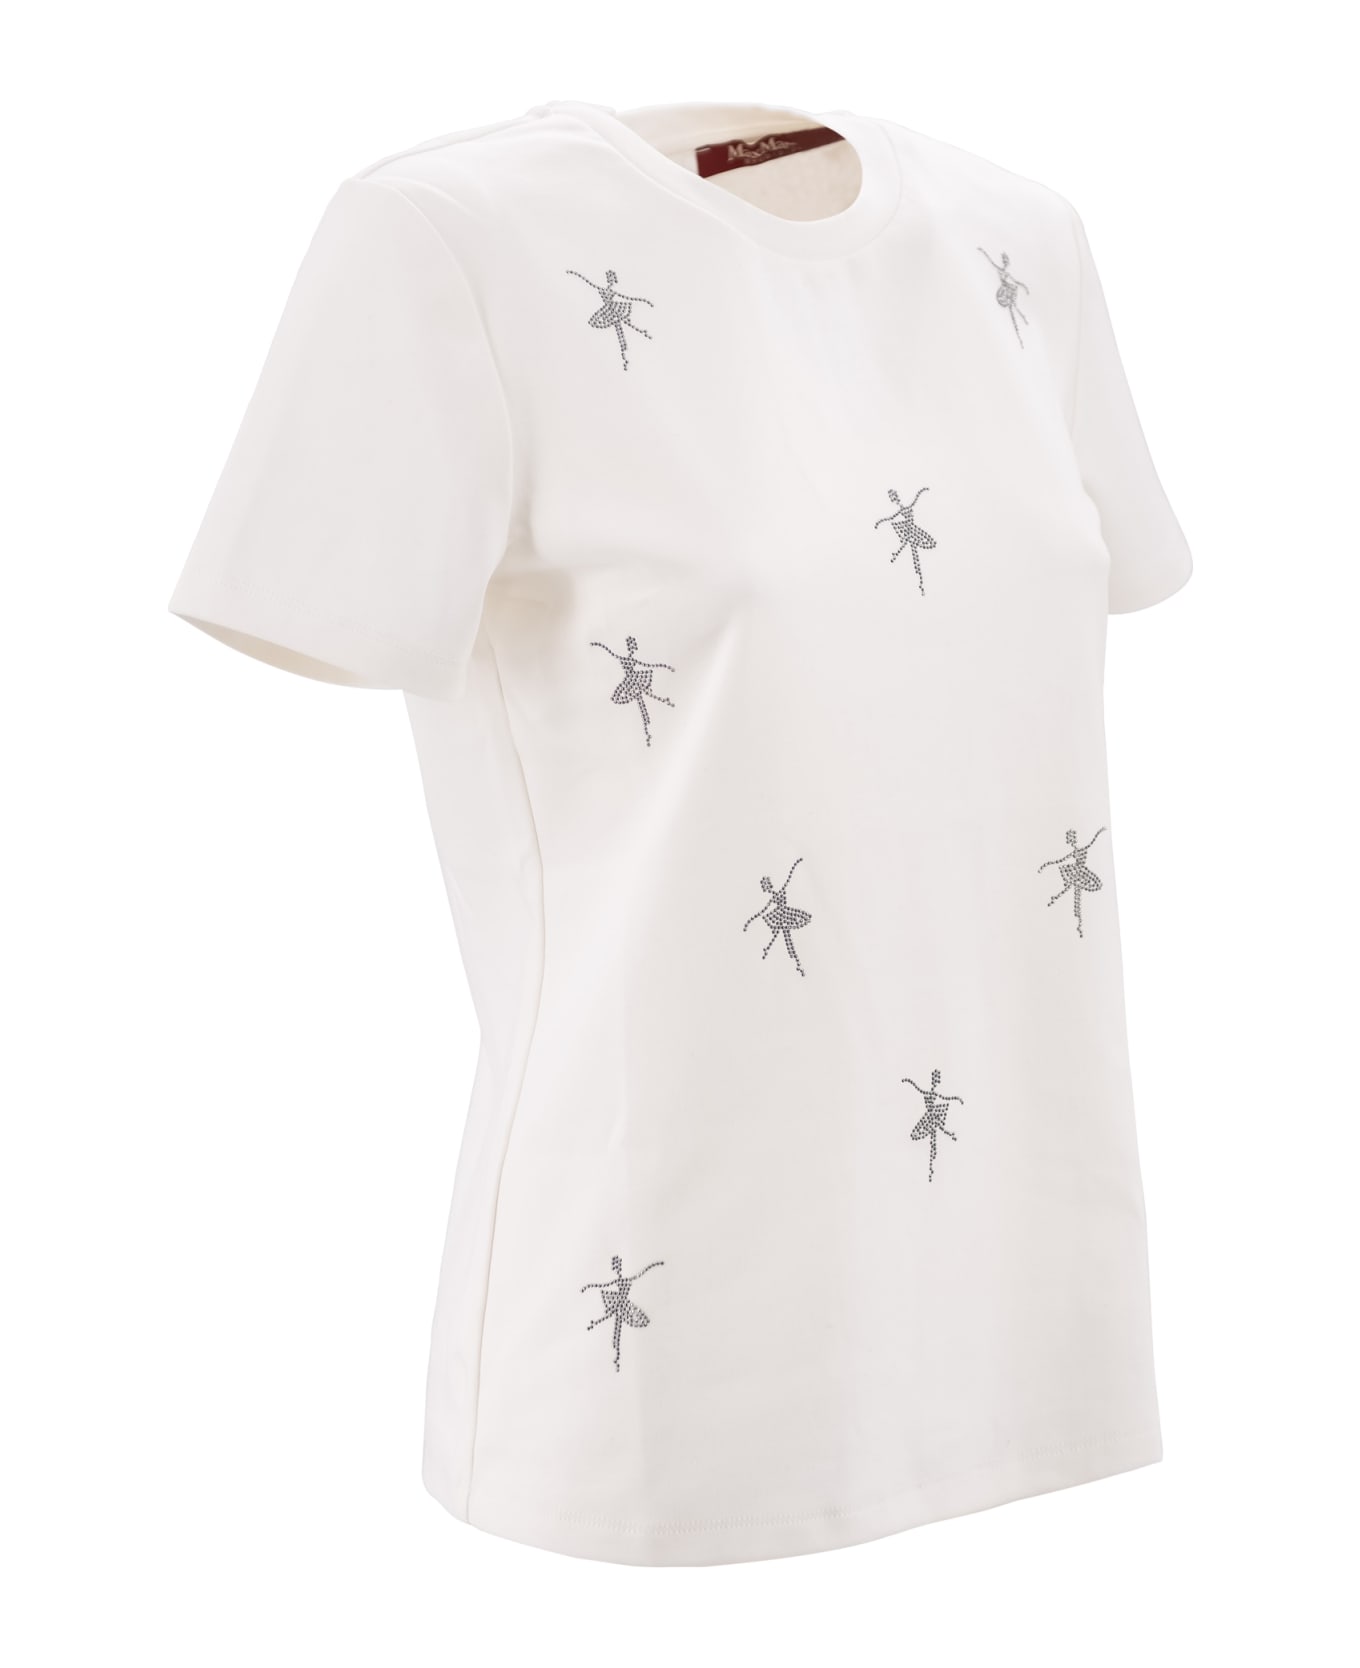 Max Mara Studio Jewel T-shirt - Bianco seta Tシャツ